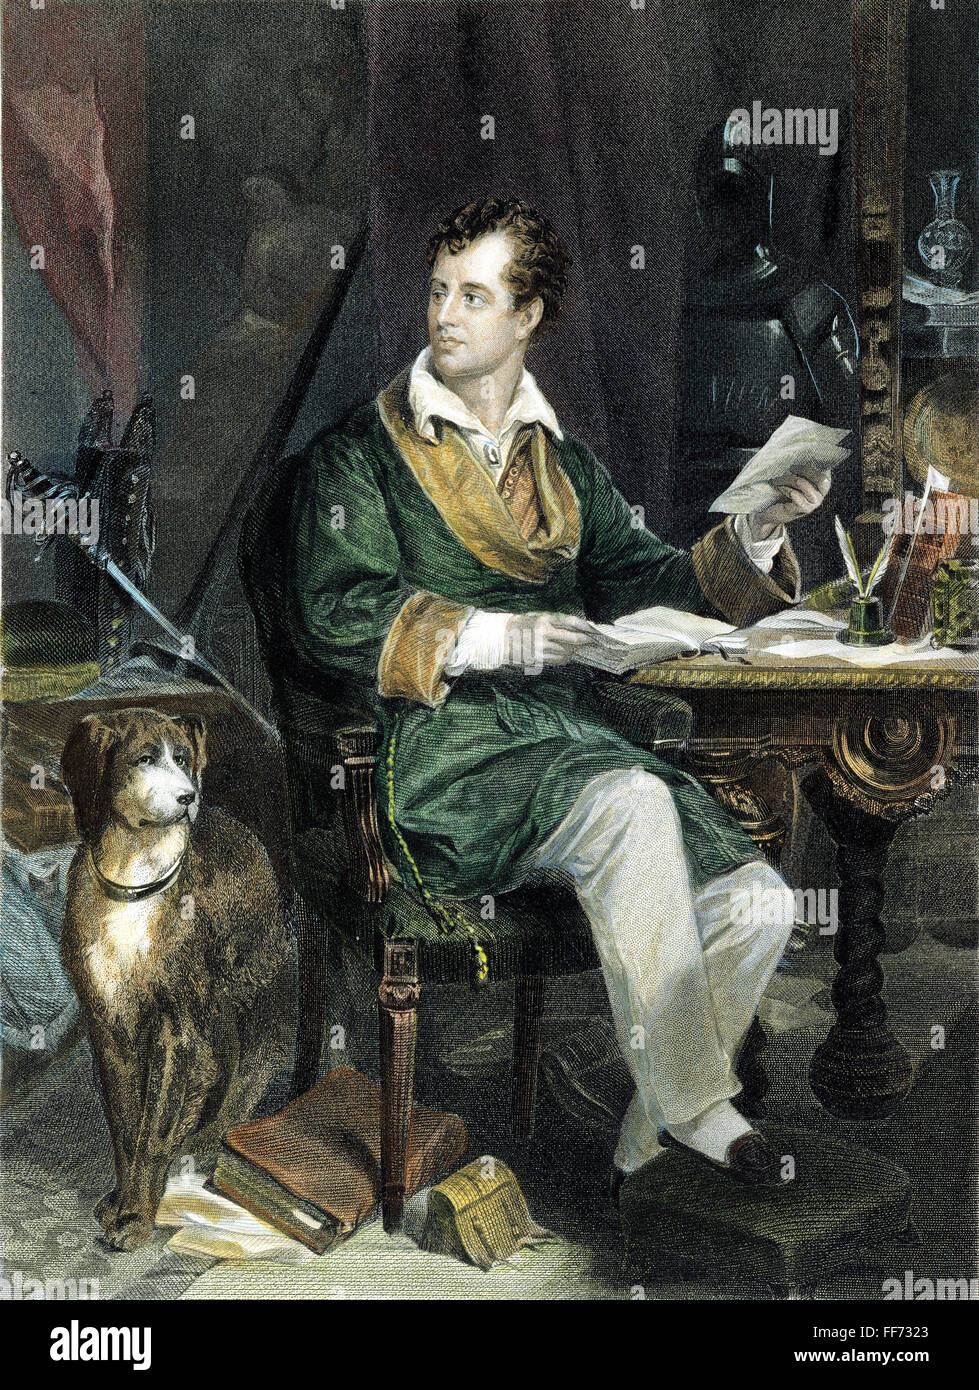 GEORGE GORDON BYRON /n(1788-1824). 6. Baron Byron. Englischer Dichter. Stahl, Gravur, amerikanisch, 1867, nach einem Gemälde von Alonzo Chappel. Stockfoto